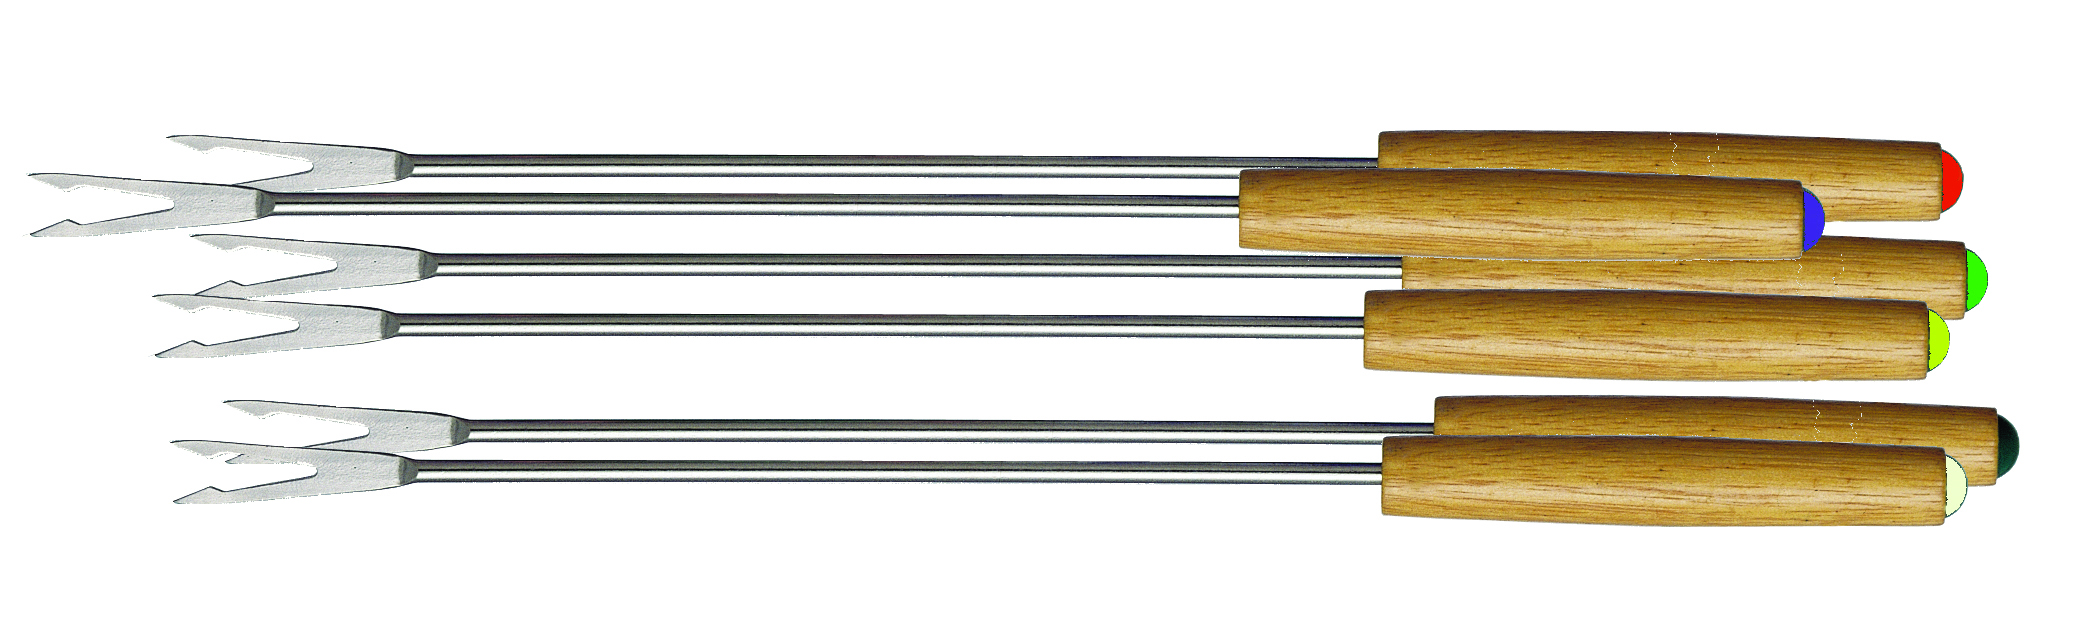 Fondue forks 203900